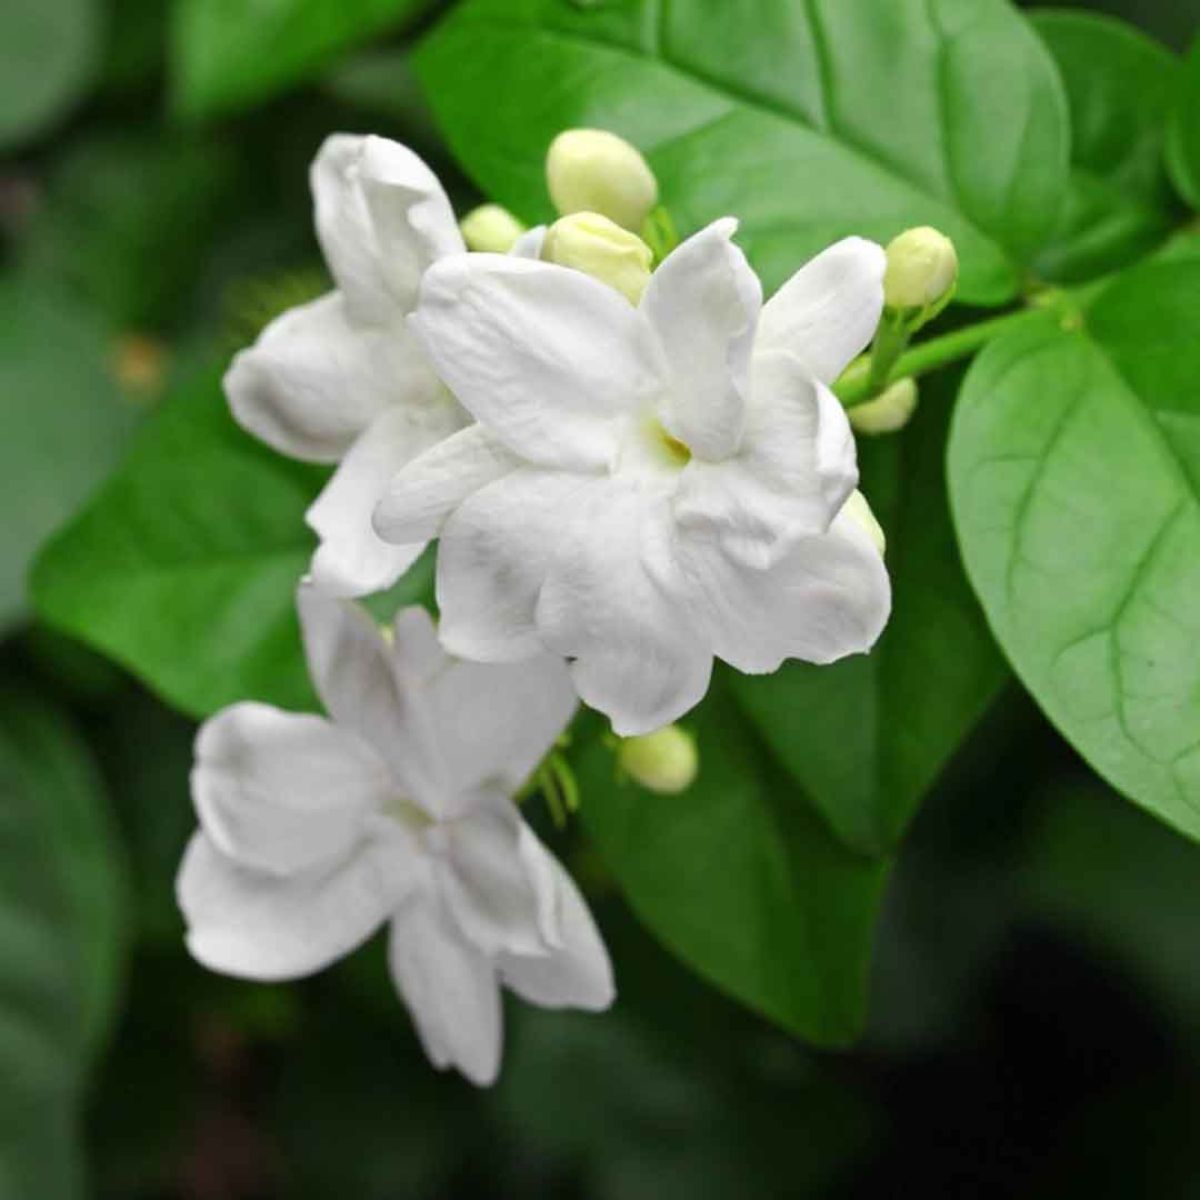 Arabian jasmine flower on Thursd